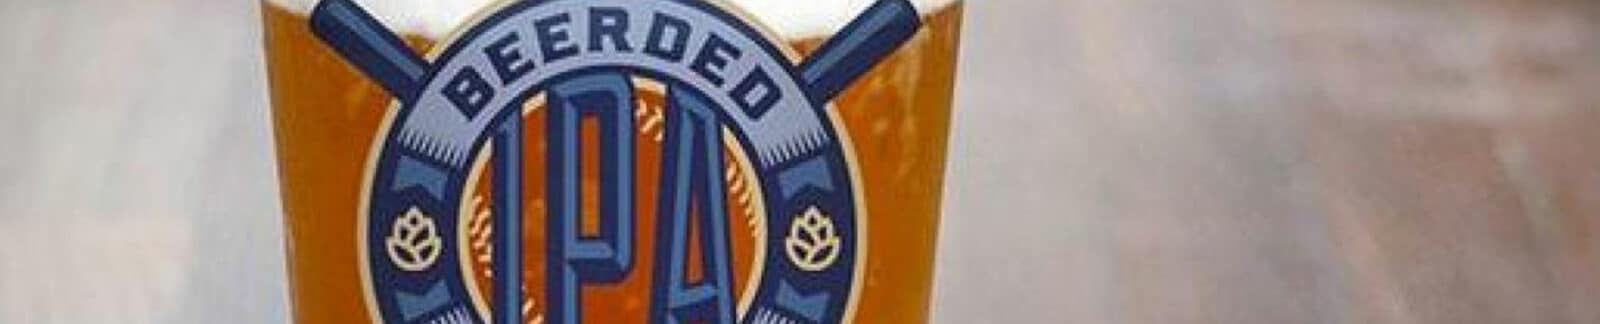 Beerded Brewer IPA header